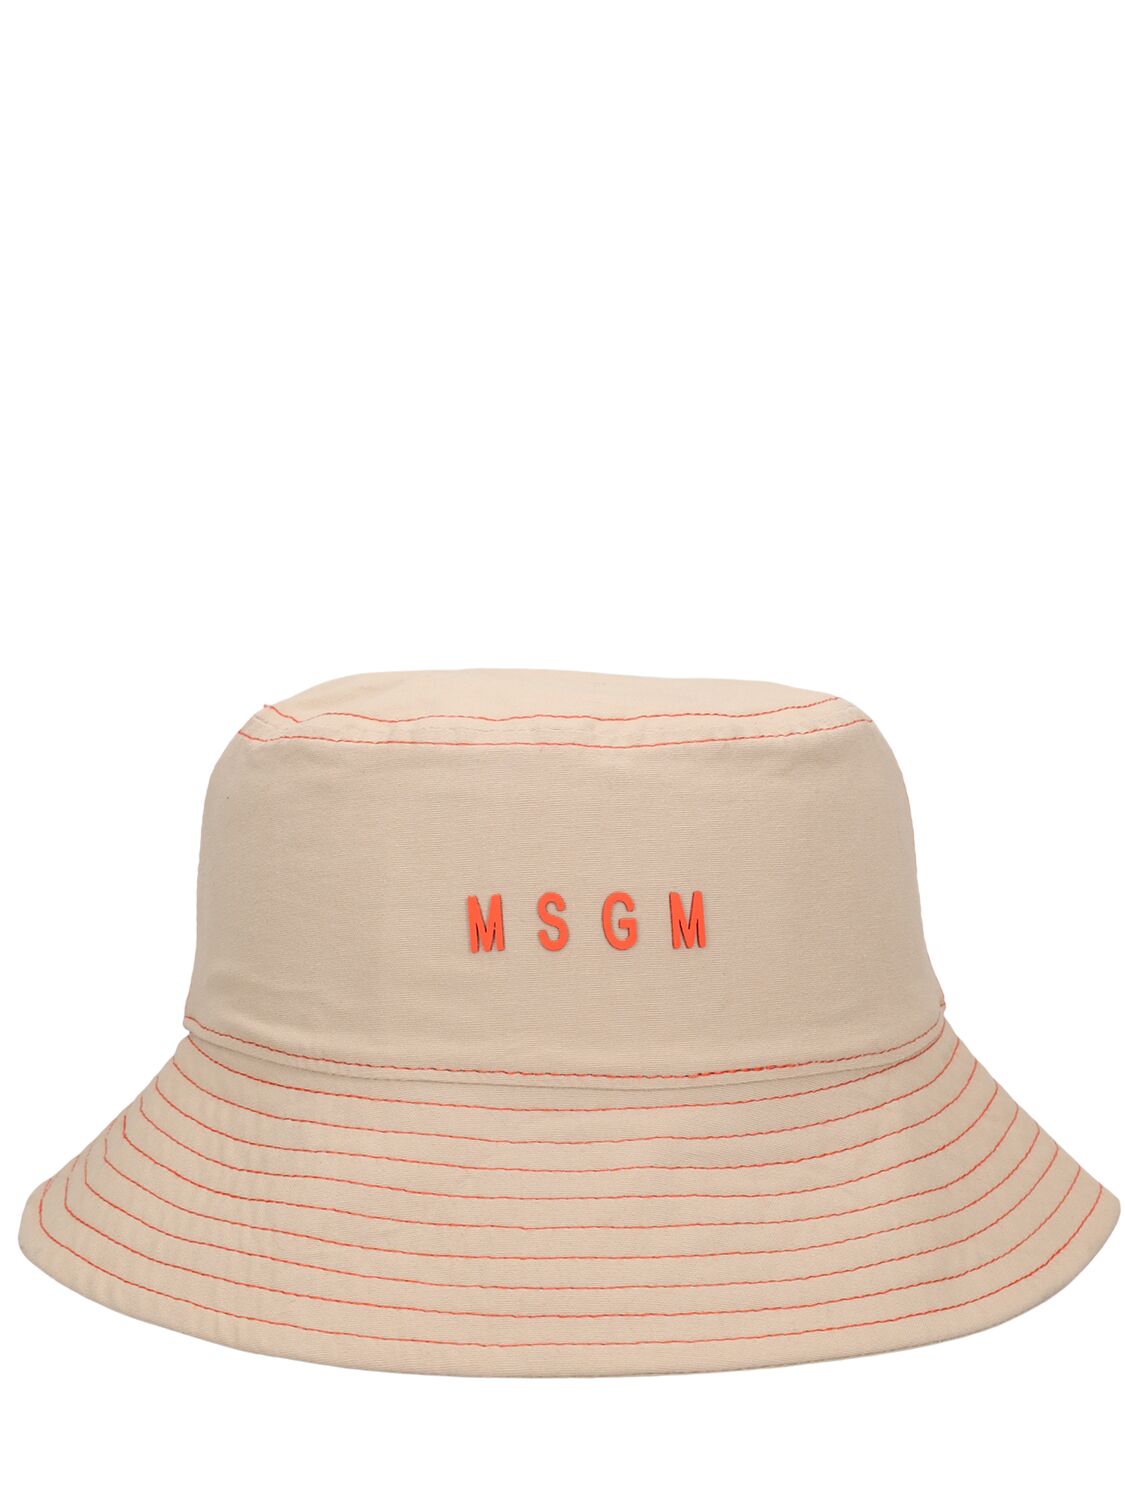 Msgm Kids' Cotton Bucket Hat In Brown